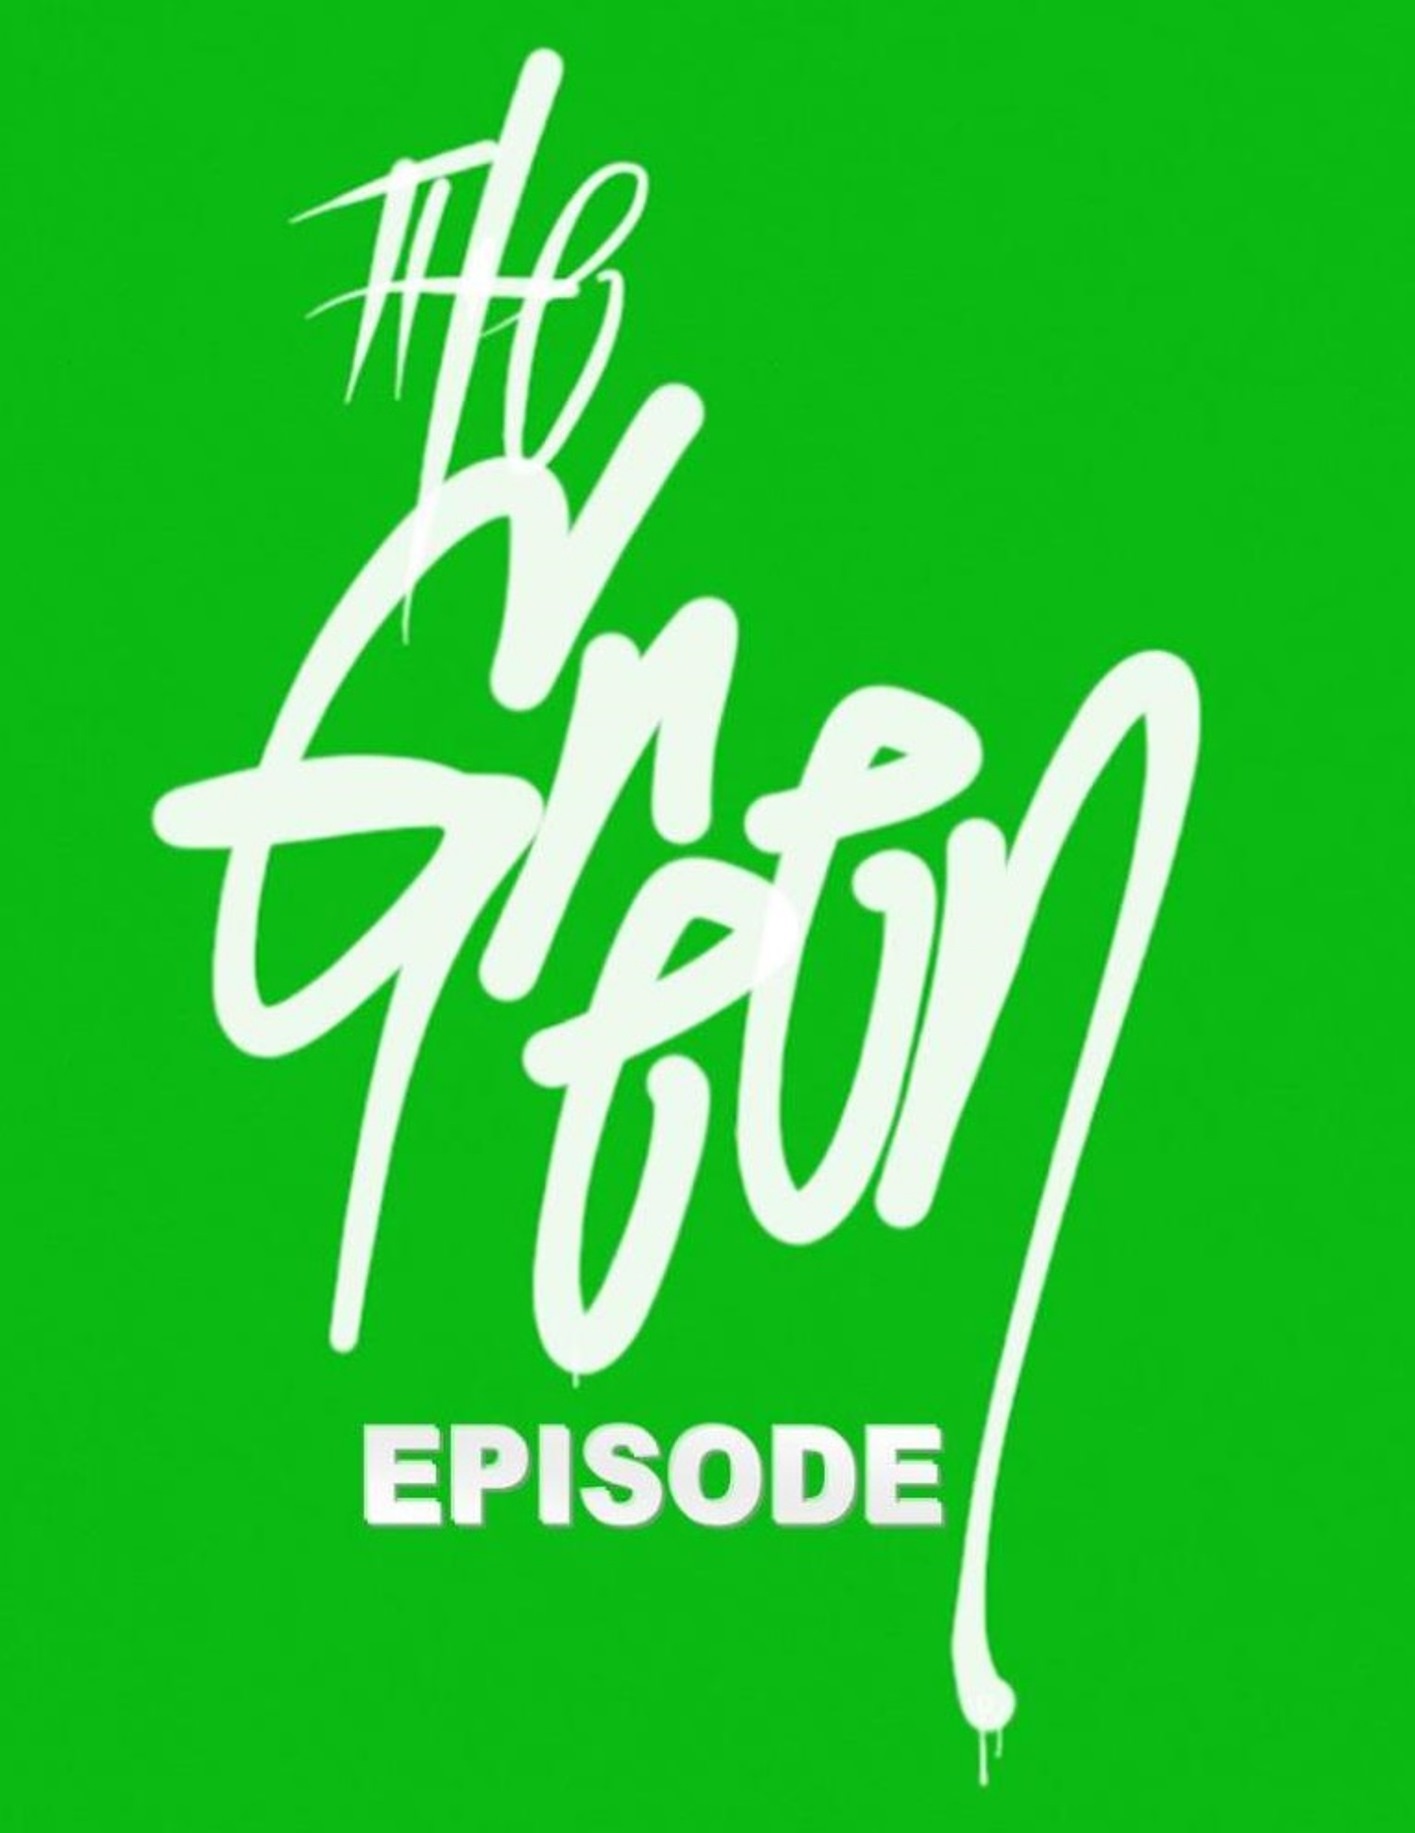 Episode 14: The Green Episode